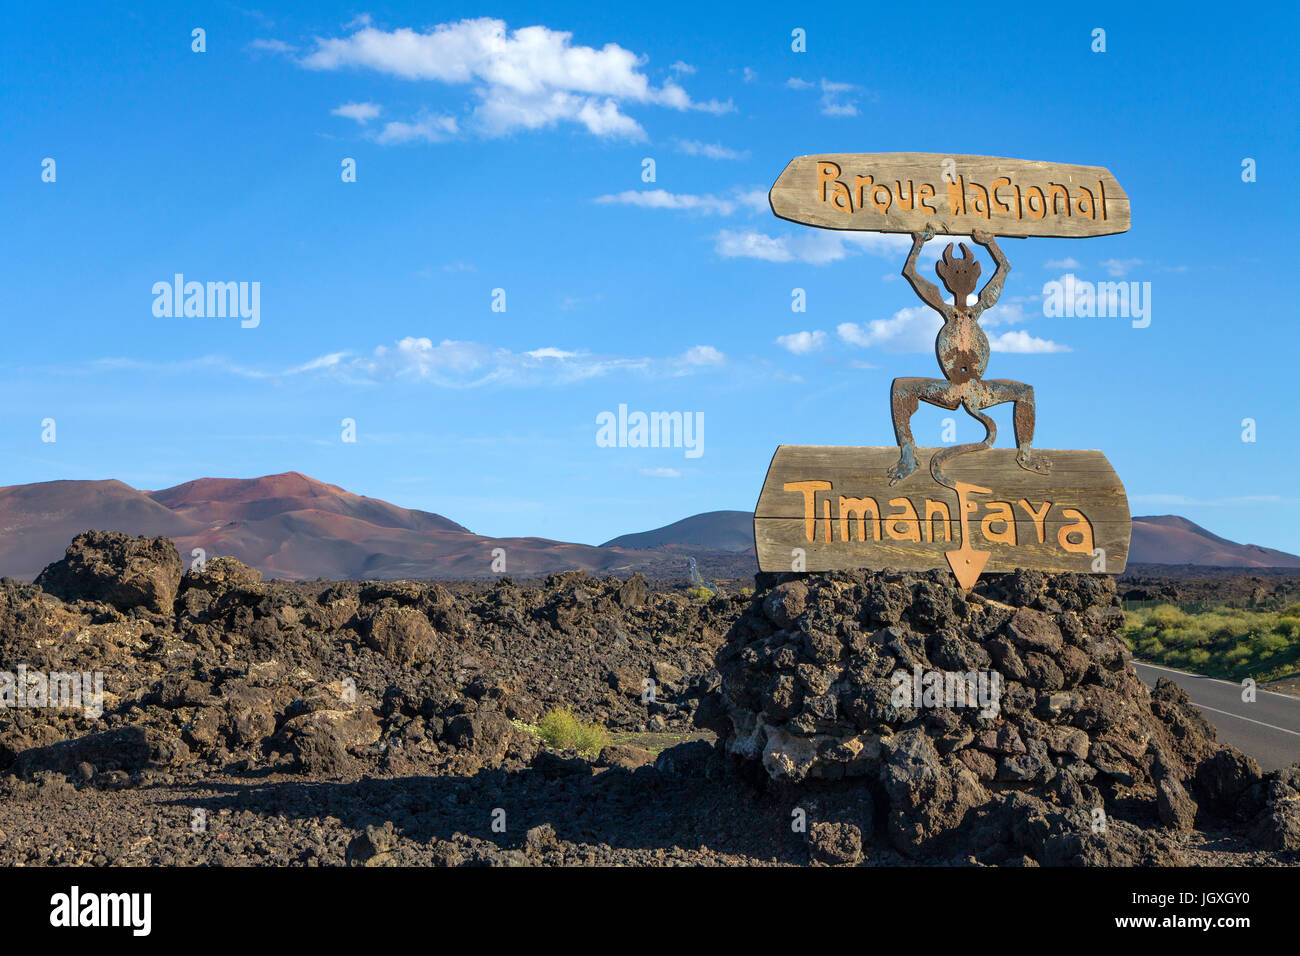 Hinweisschild, beginn vom Parque nacional de timanfaya, entworfen von Cesar Manrique, nationalpark Timanfaya, Lanzarote, kanarische isole, europa | s Foto Stock